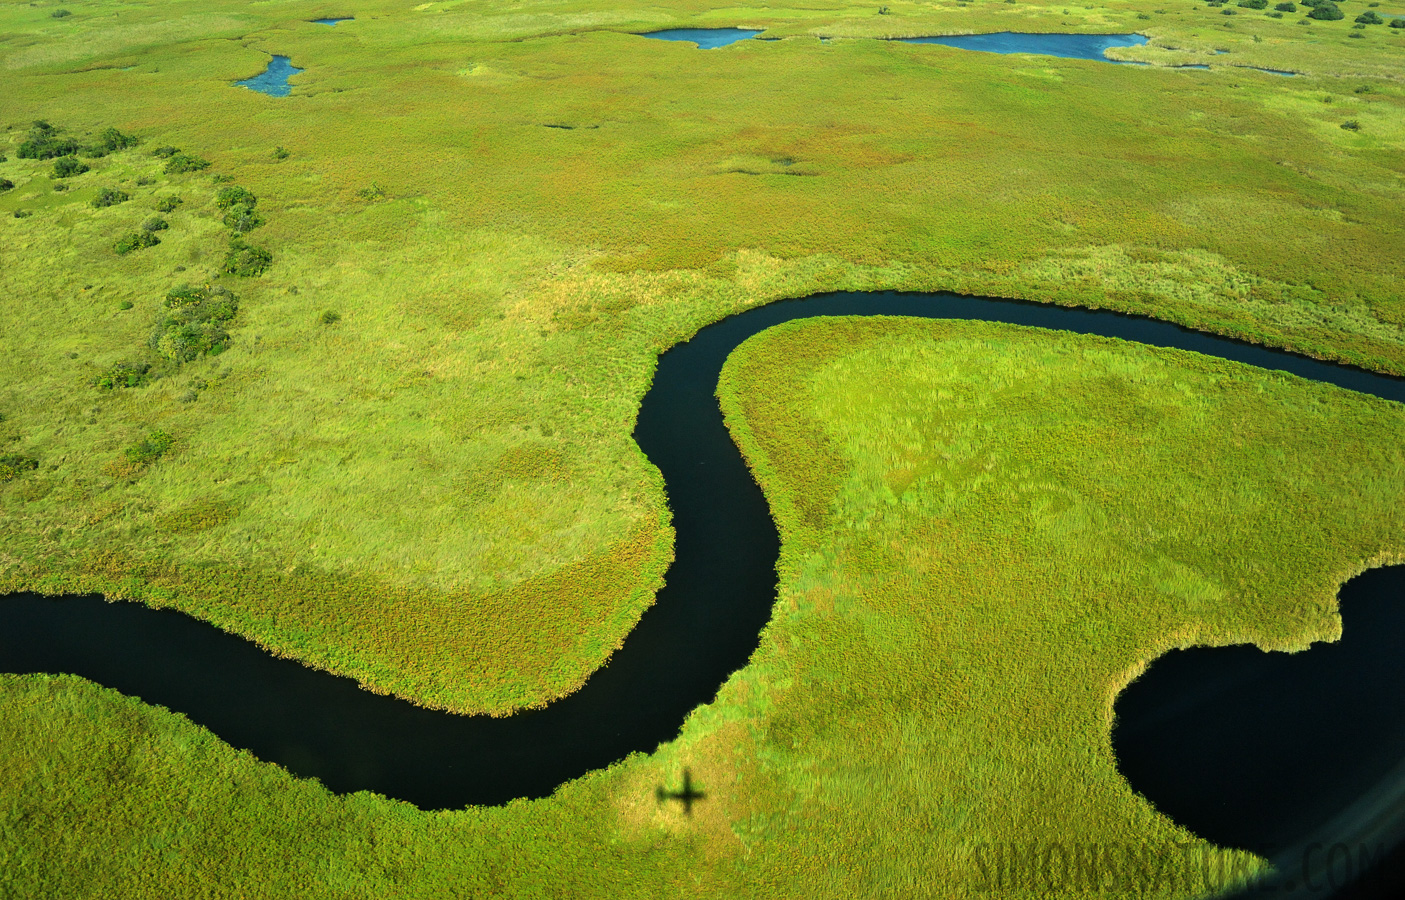 Okavango Delta May 2014 [28 mm, 1/2500 sec at f / 8.0, ISO 2500]